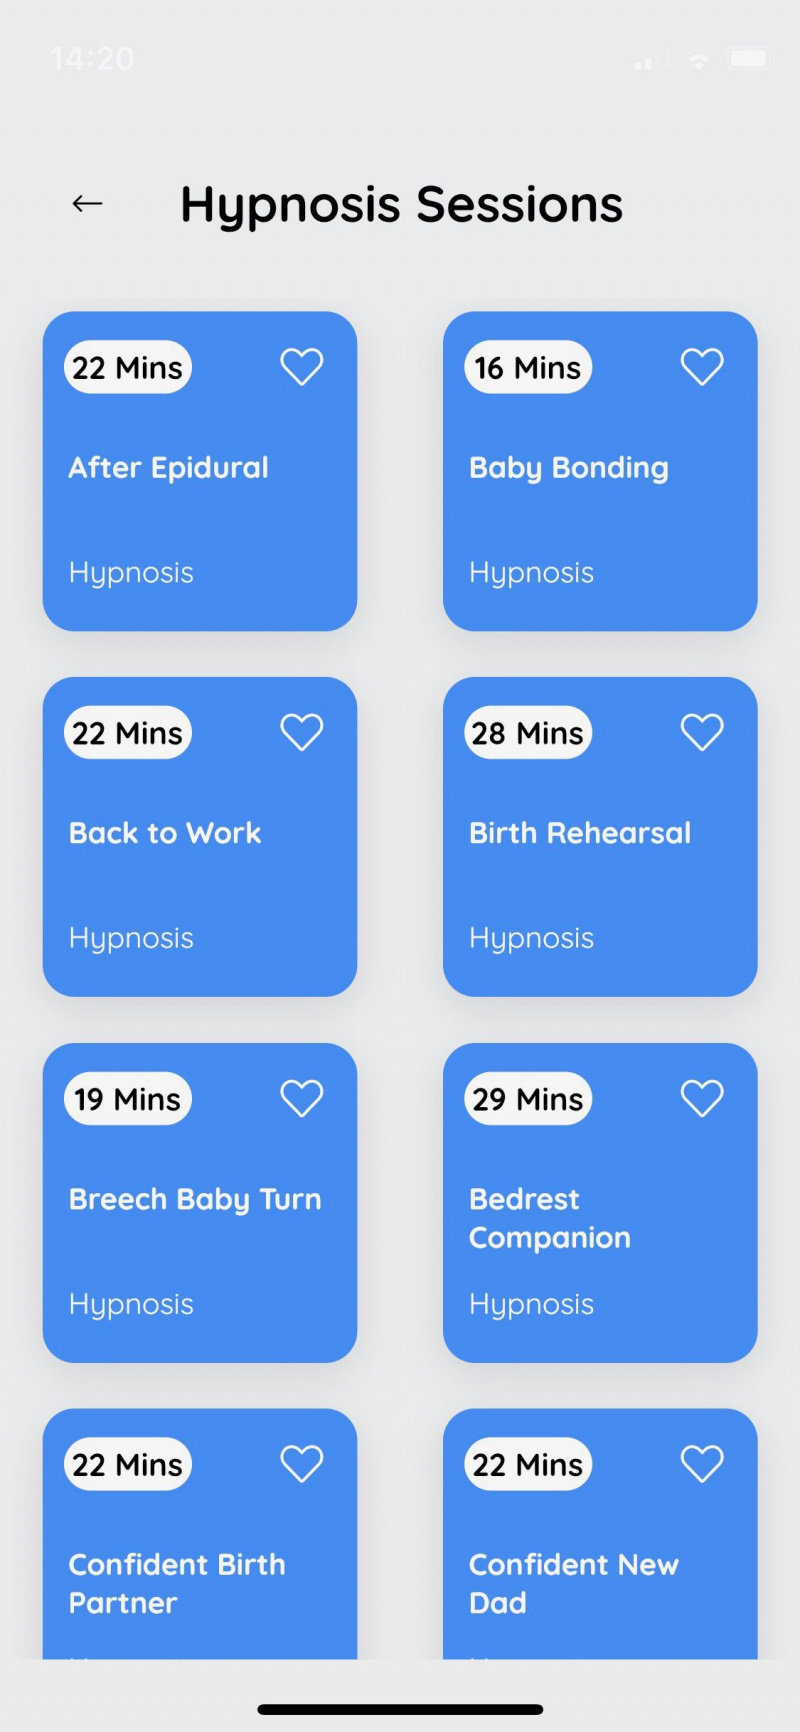   Captura de tela do aplicativo Gentlebirth mostrando sessões de hipnose